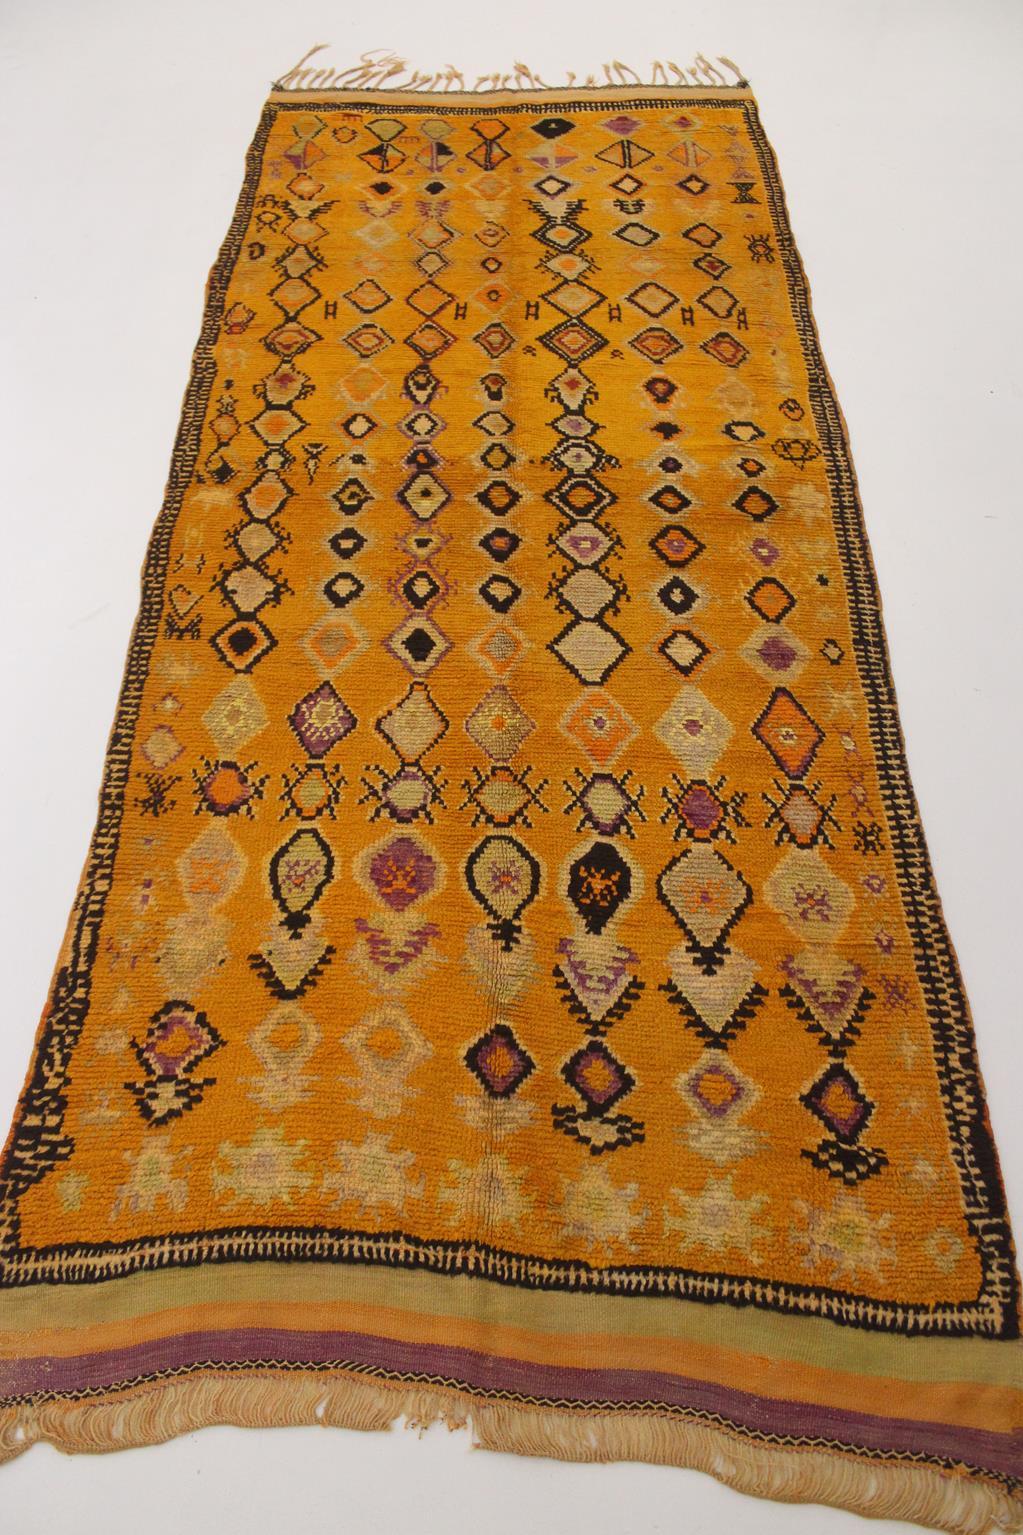 20th Century Vintage Ait Ouaouzguite rug - Yellow/purple/black - 5x12.1feet / 152x370cm For Sale